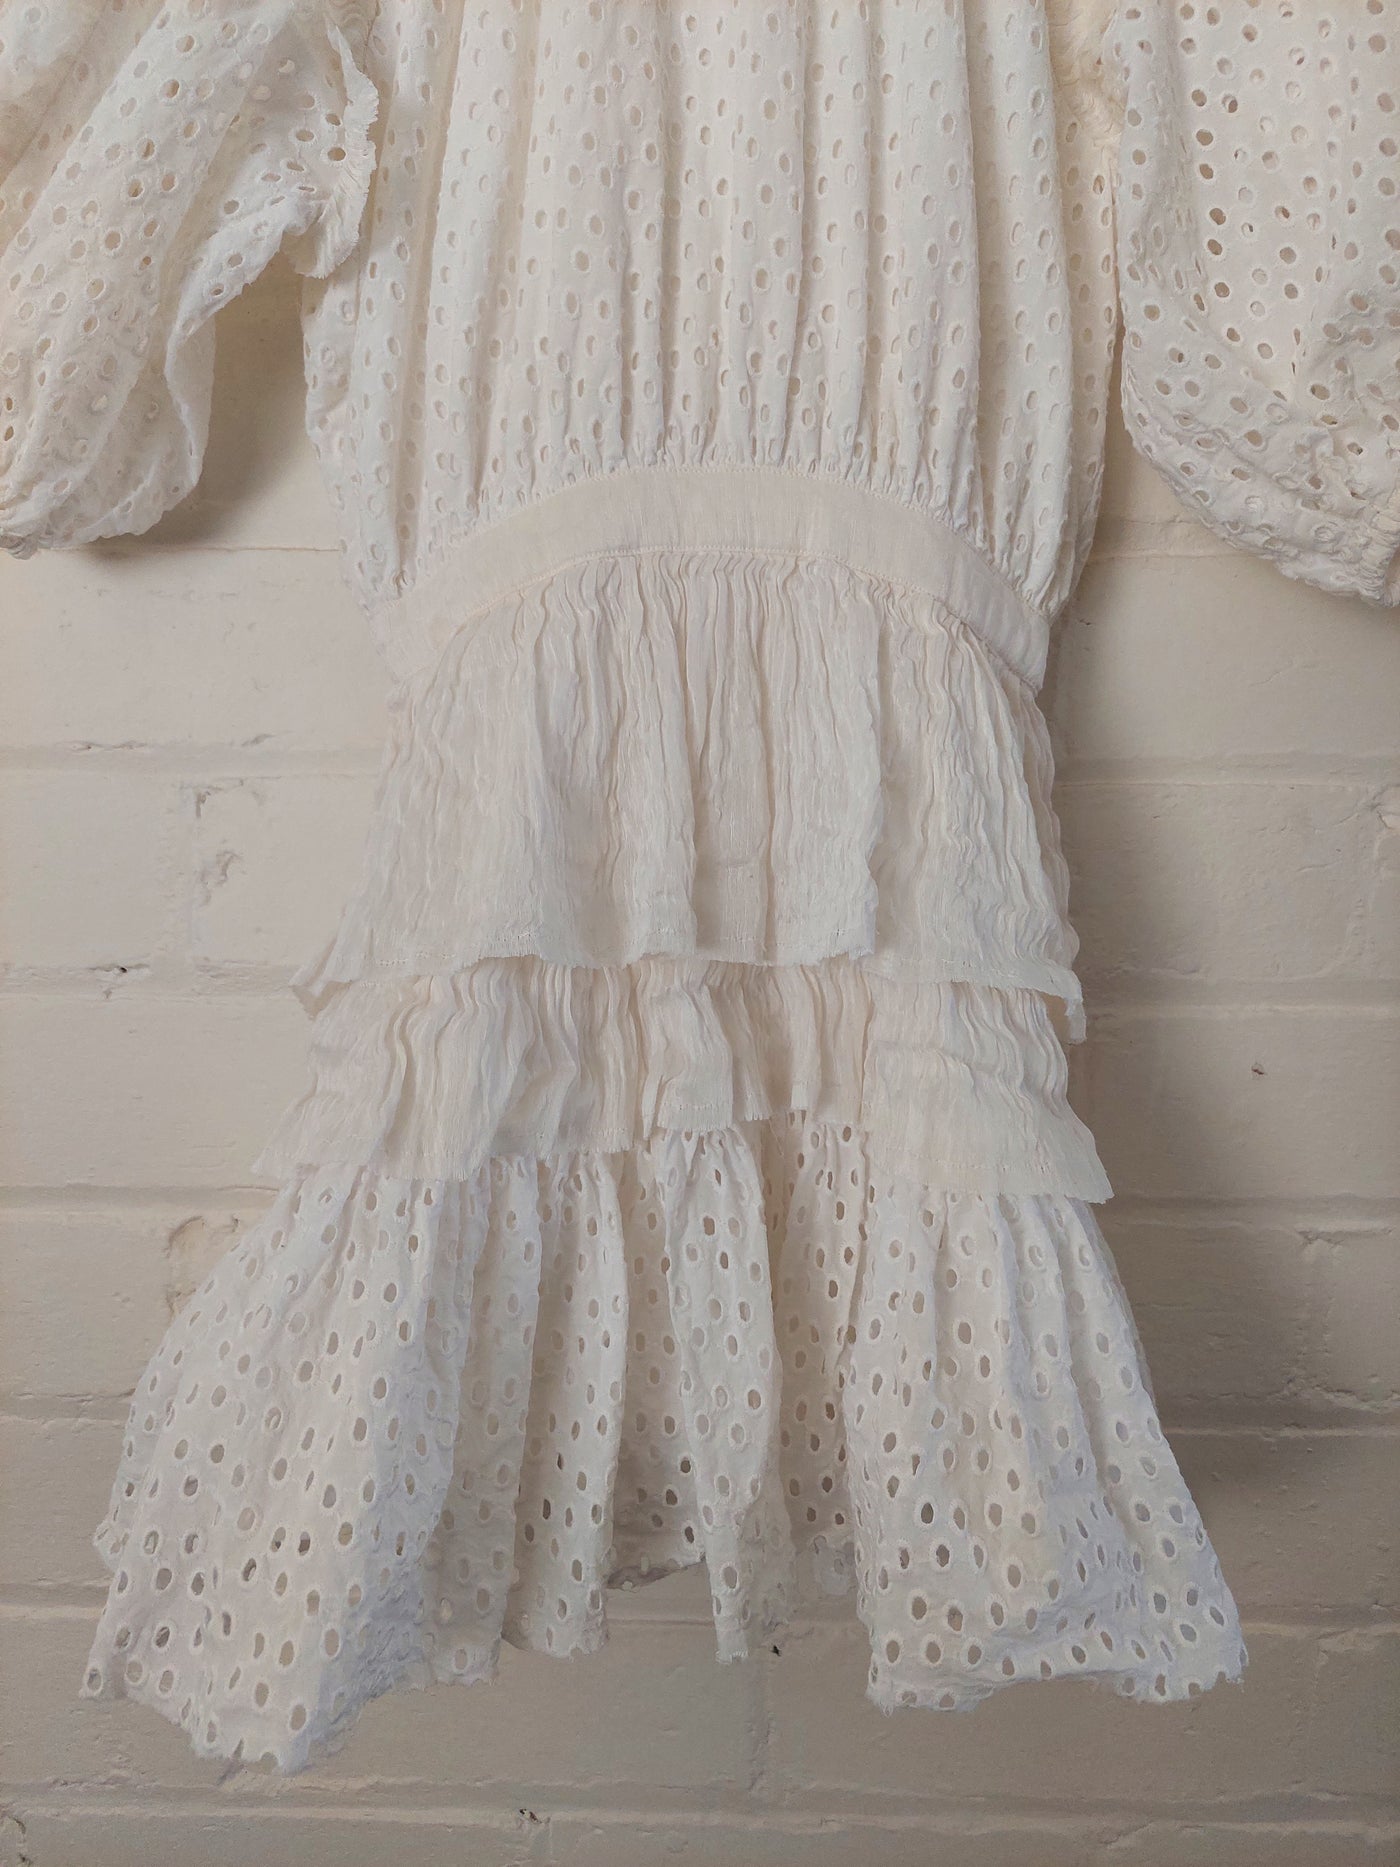 Aje 'Meadow' Broderie Mini Dress - White, Size 8